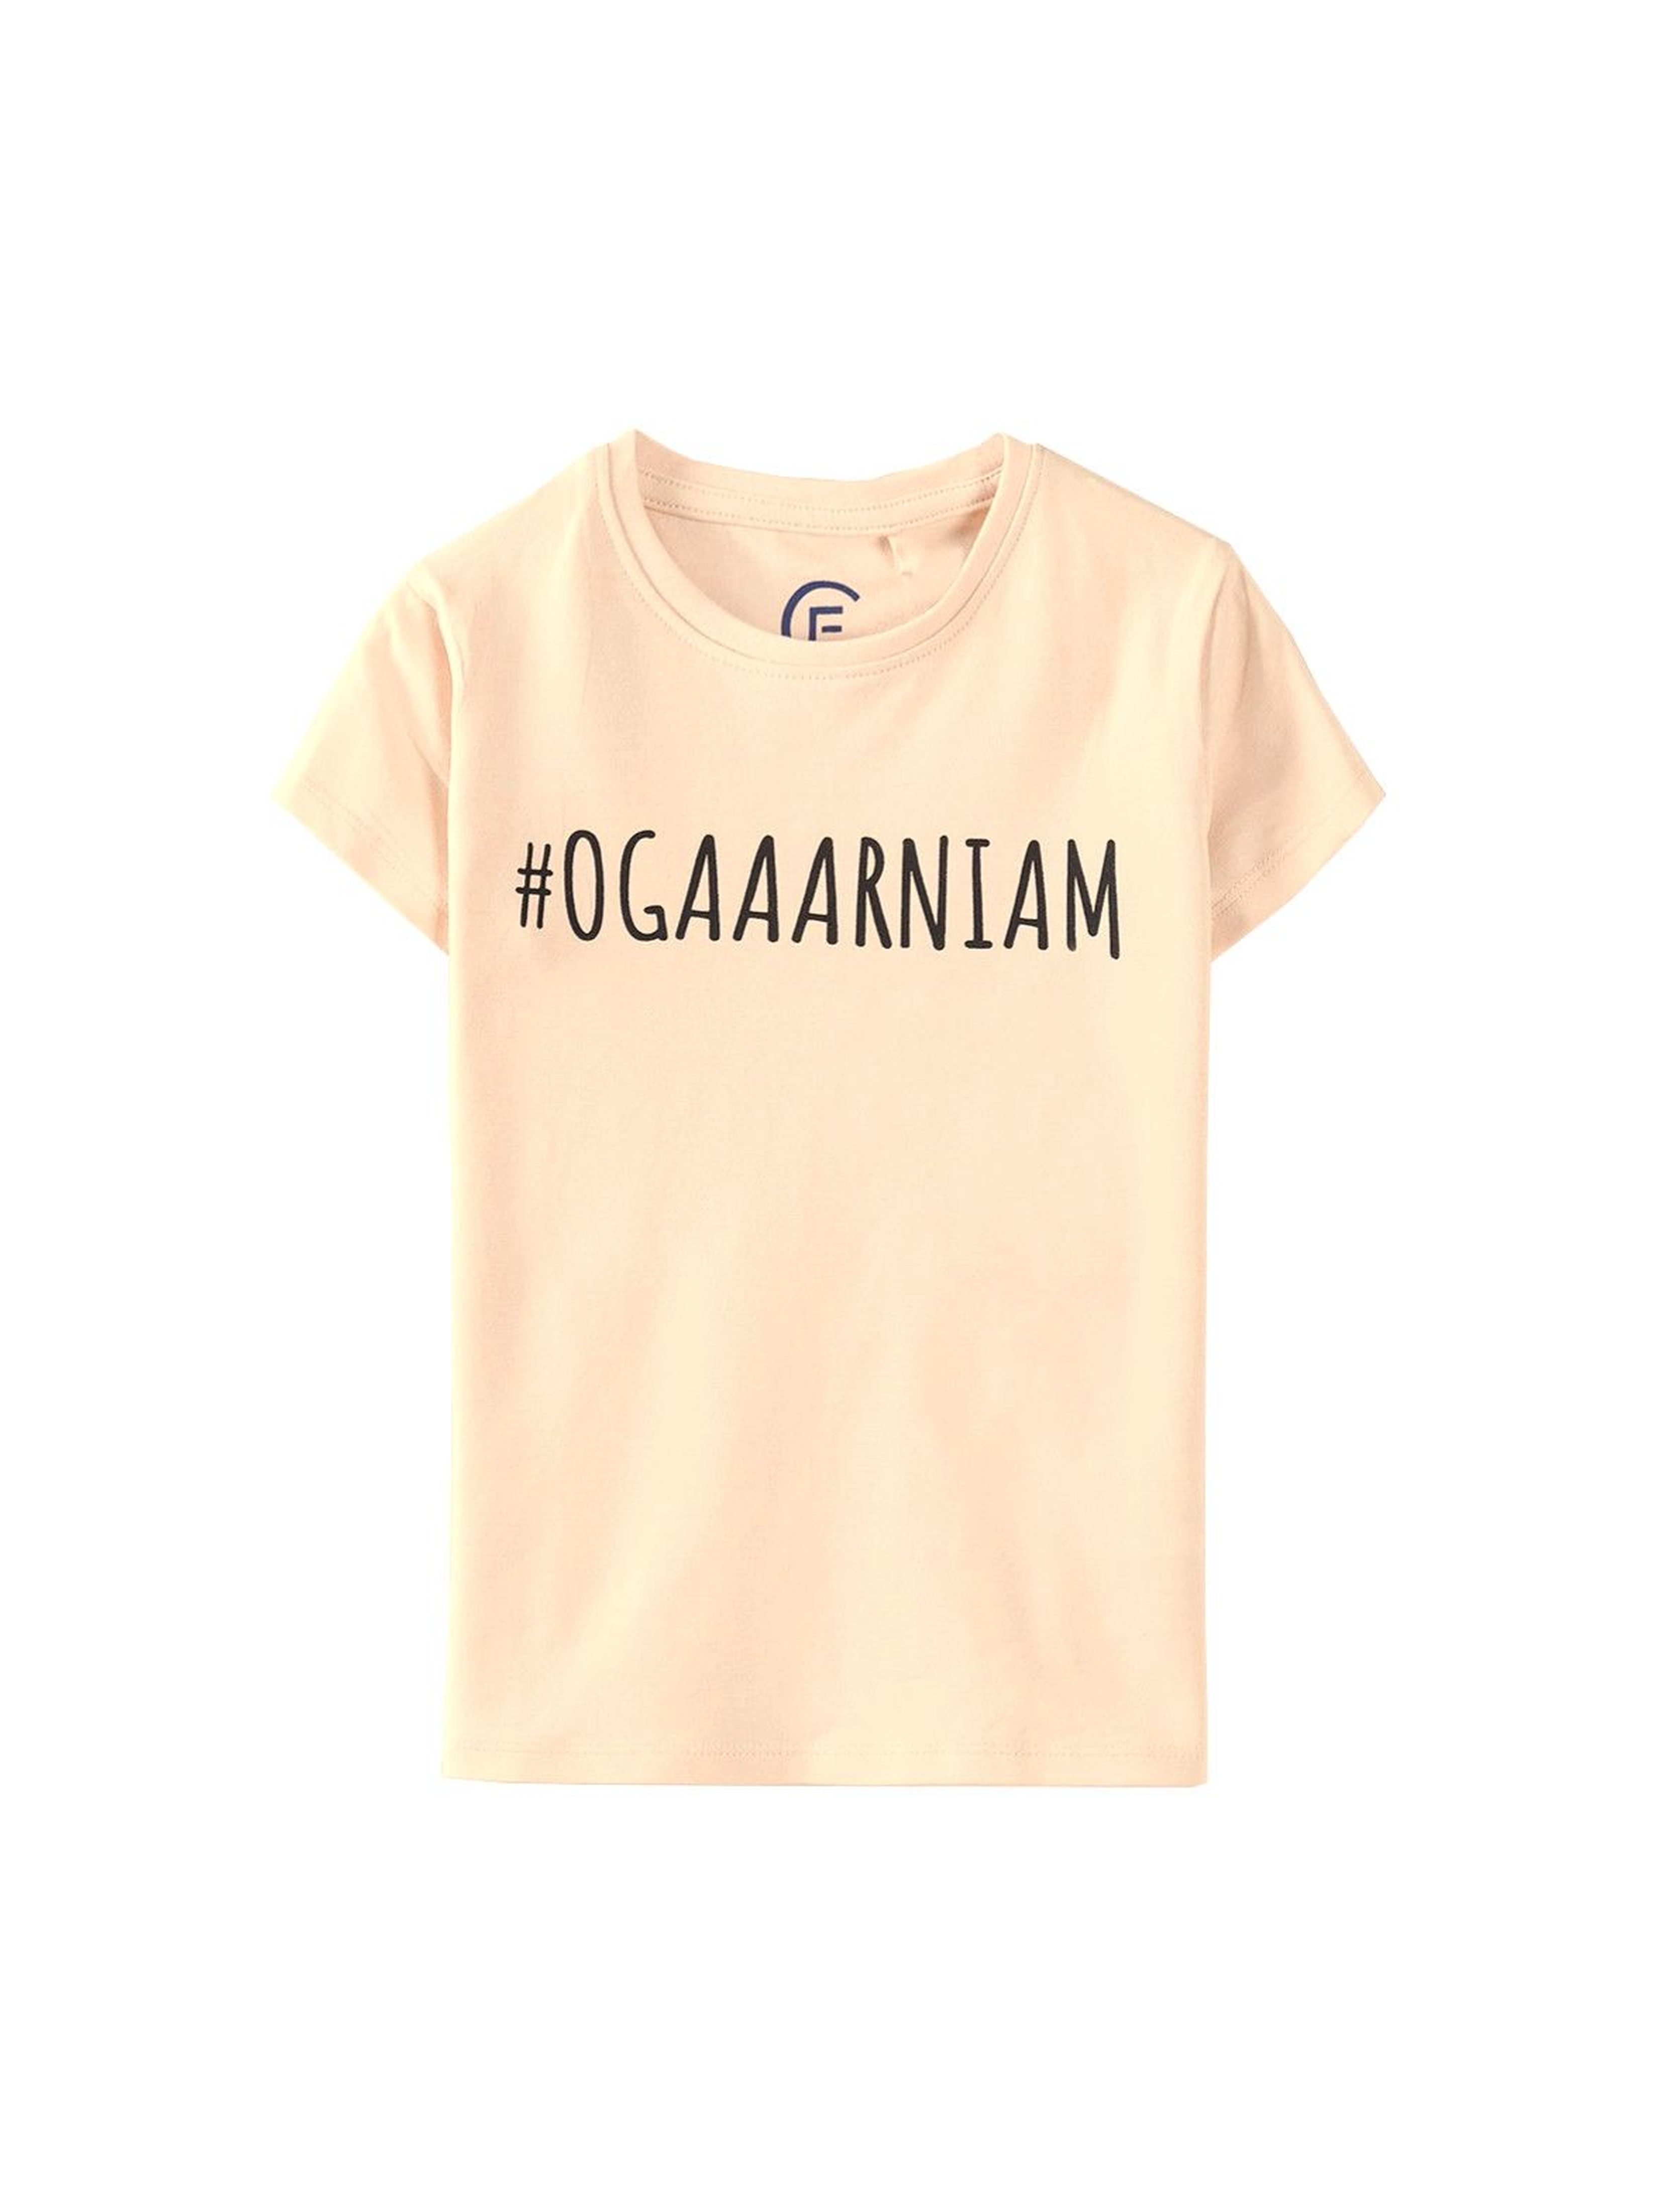 Różowy t-shirt dziewczęcy z napisem #Ogarniam